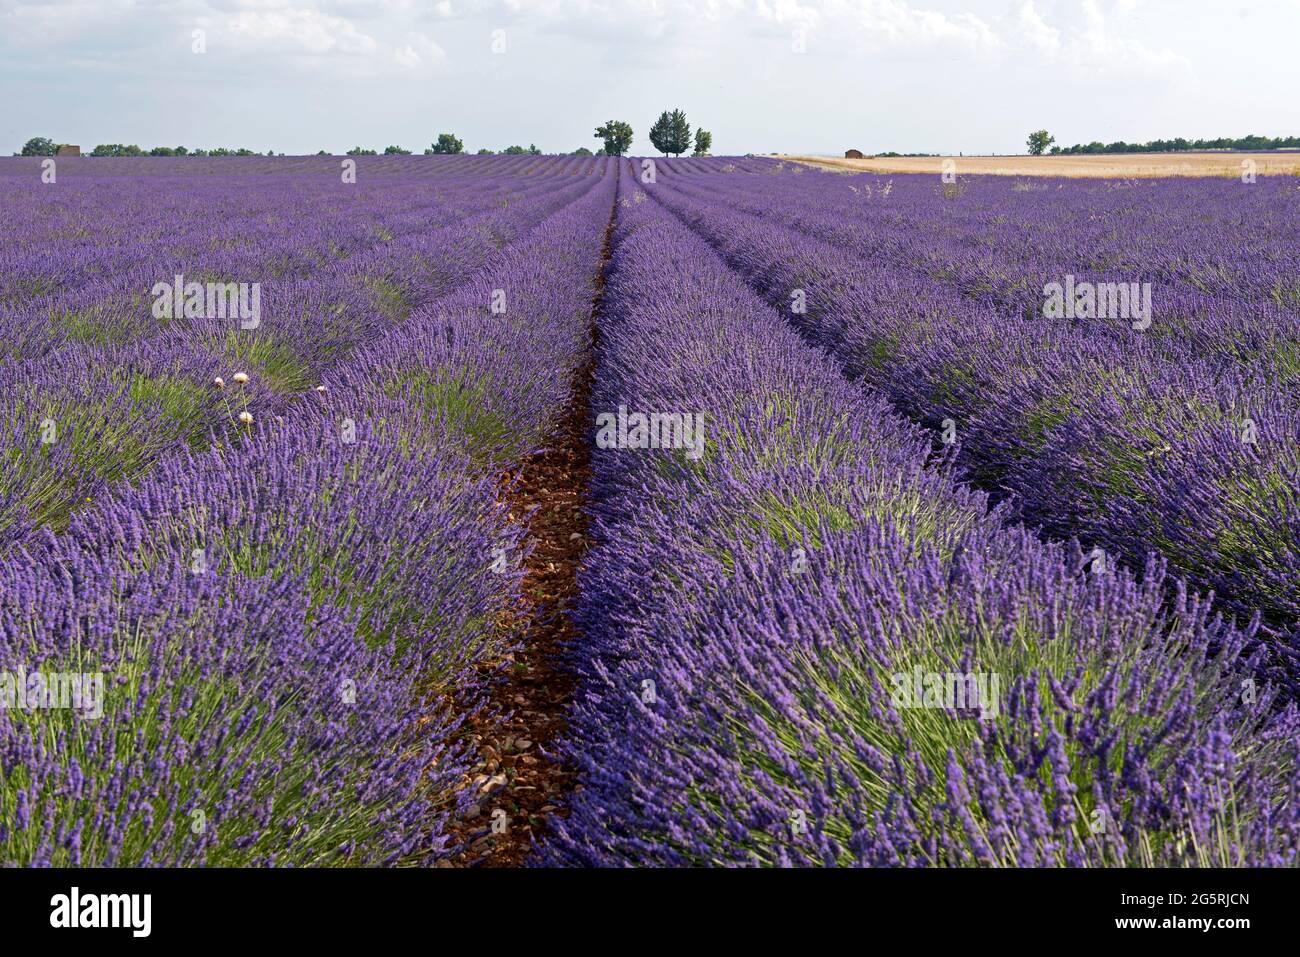 France, Alps de Haute Provence (04), plateau de Valensole, lavender fields (Lavandula sp.) Stock Photo